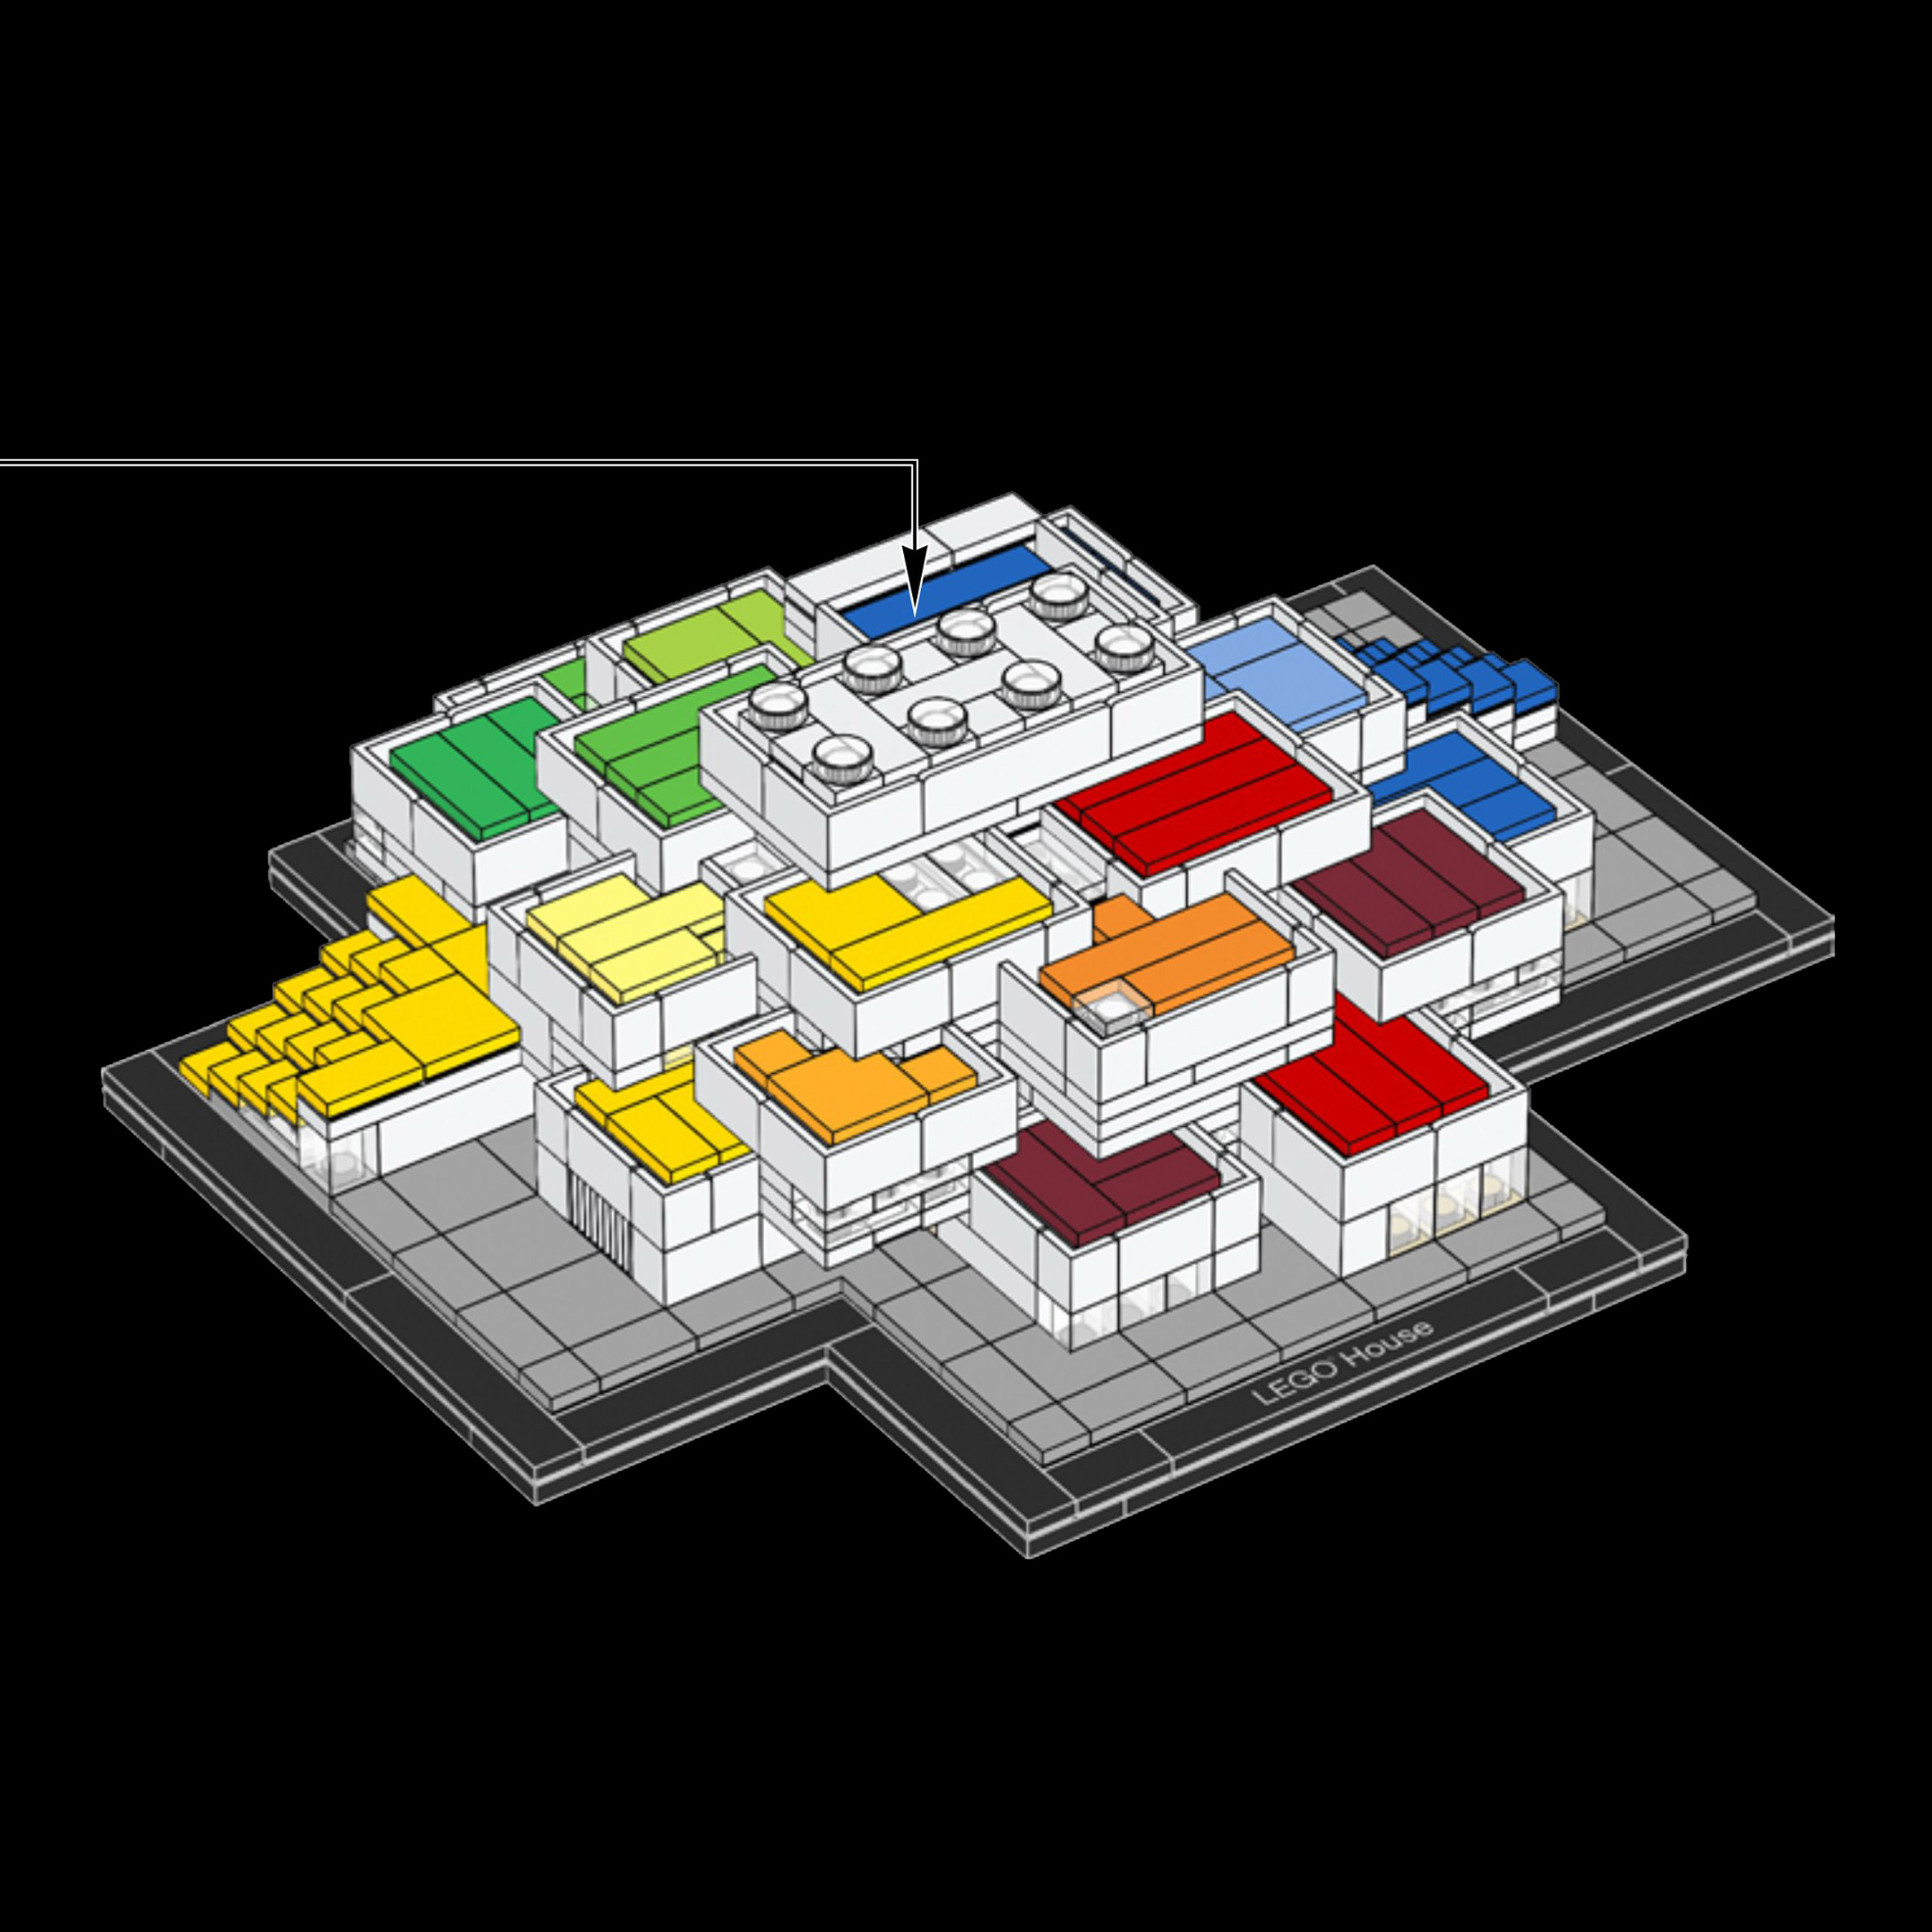 week, Lego released model kit its BIG-designed visitor centre